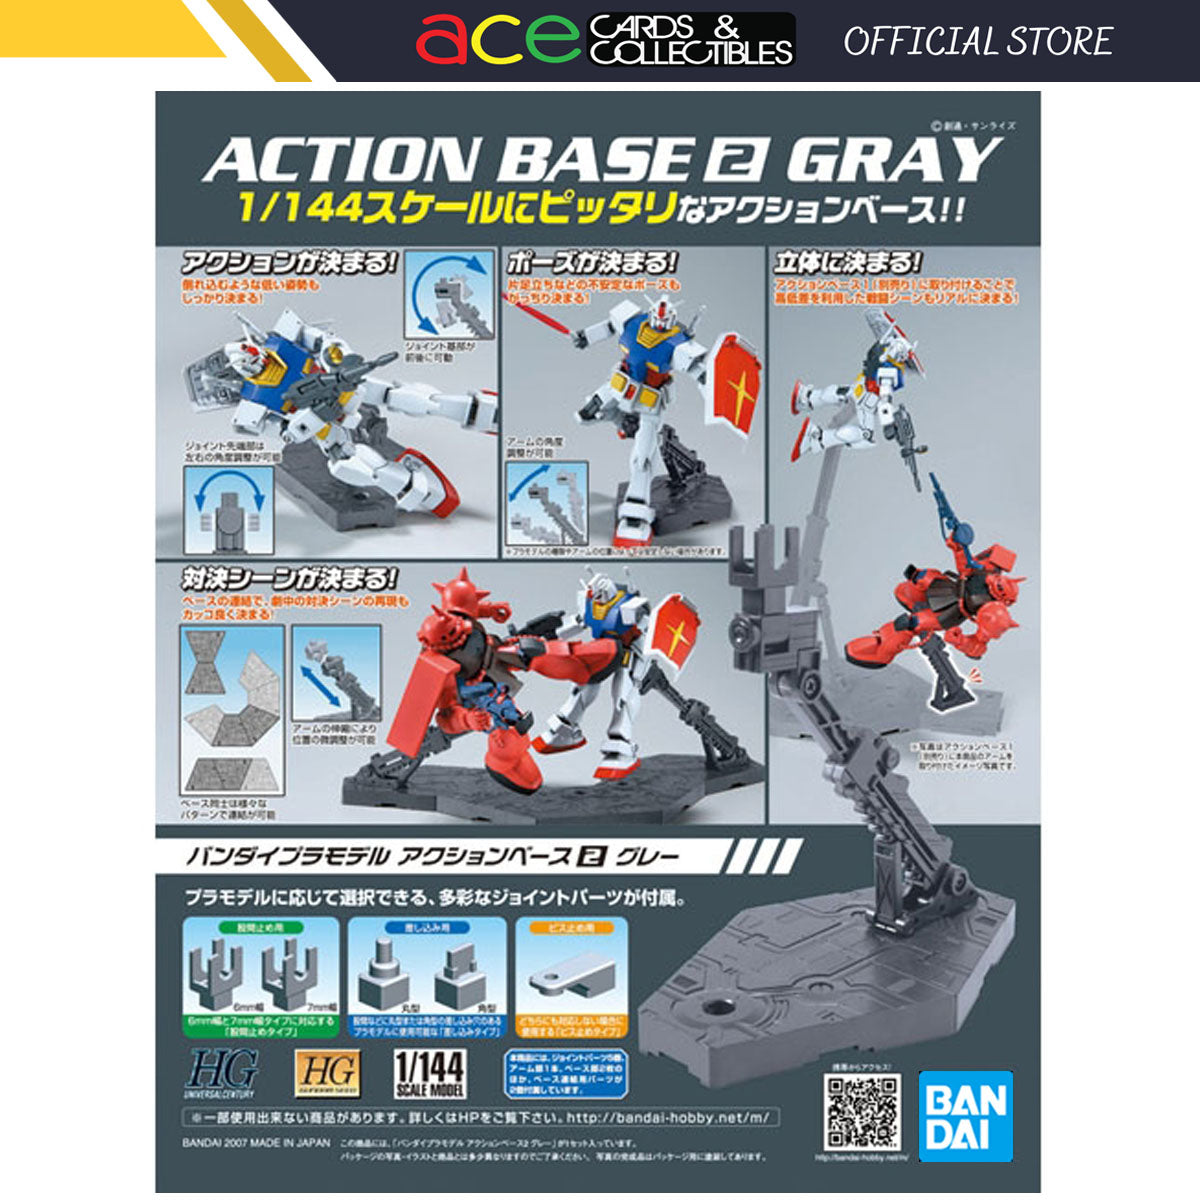 Gunpla 1/100 Action Base 2 Gray-Bandai-Ace Cards & Collectibles